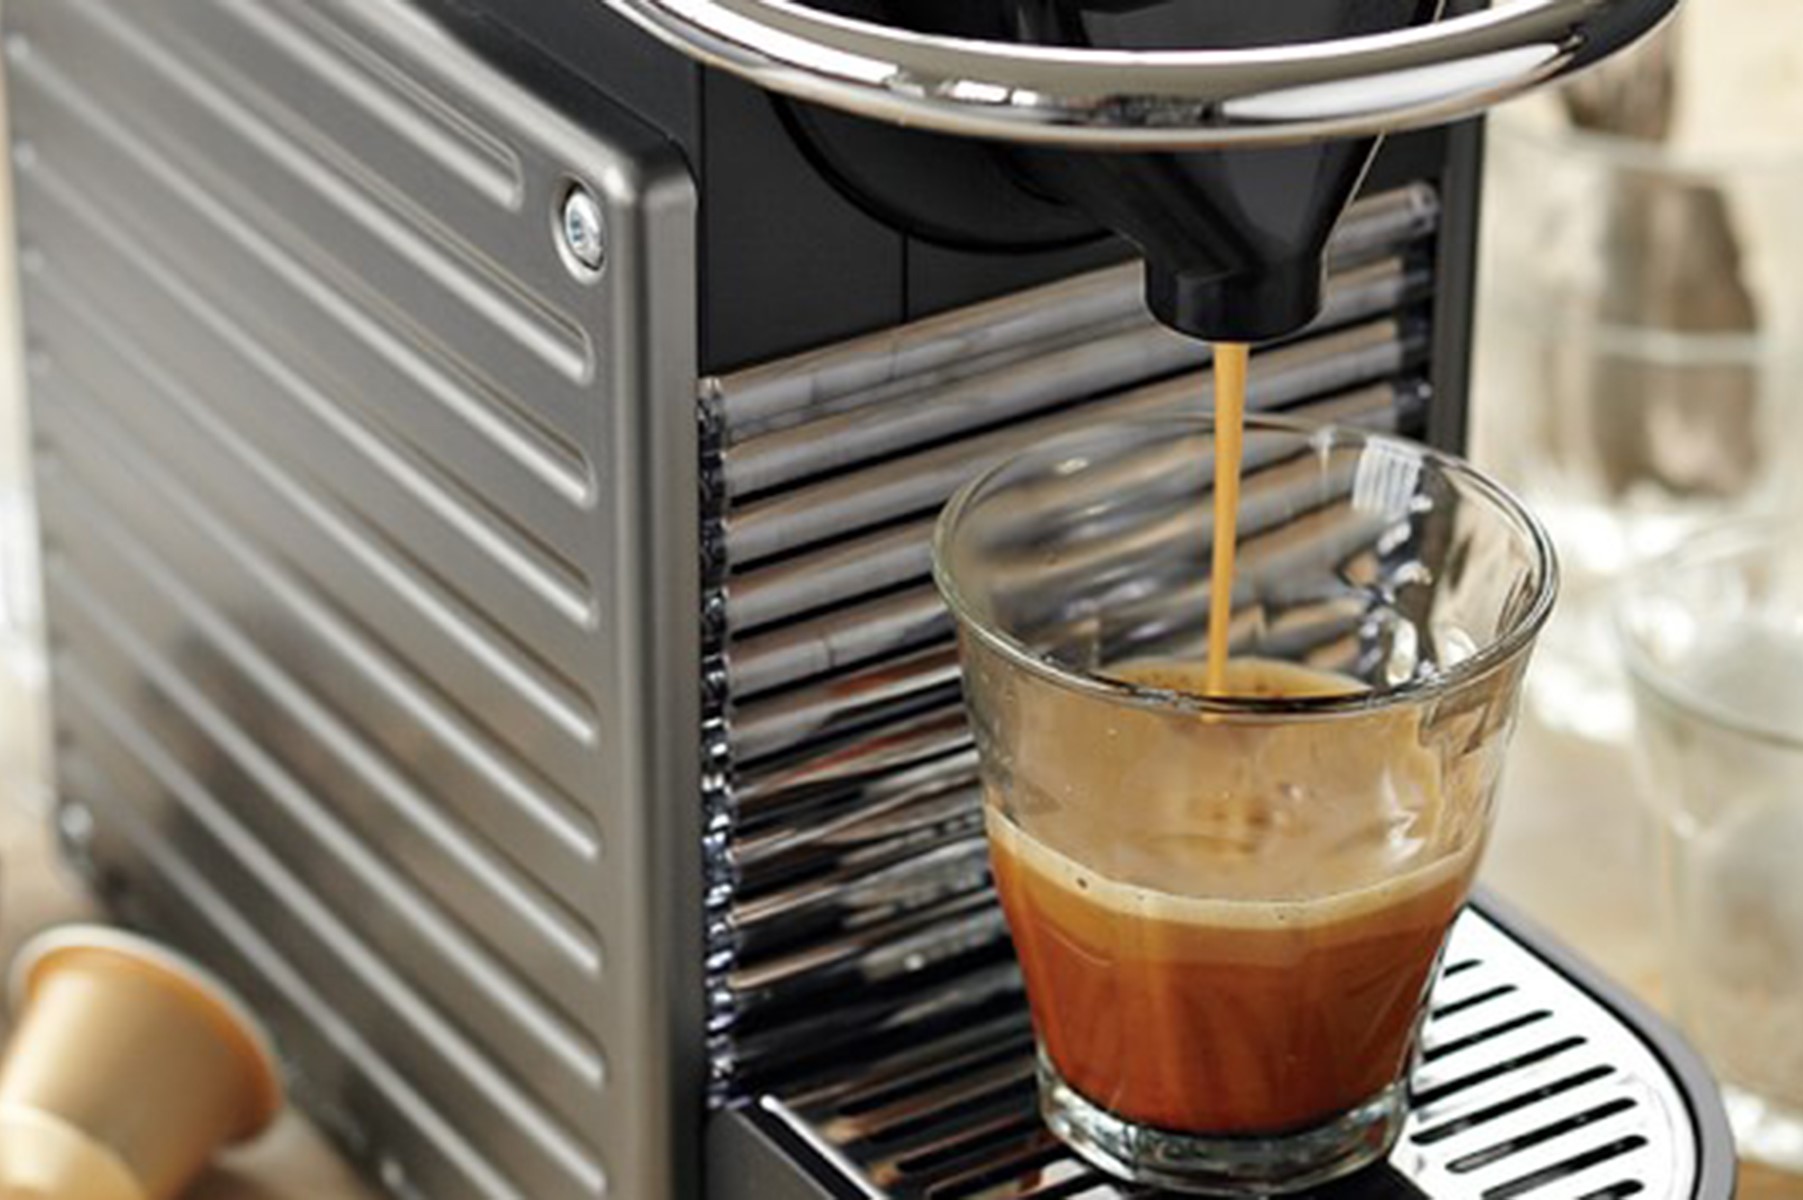  Nespresso Pixie Espresso Machine by Breville with Milk